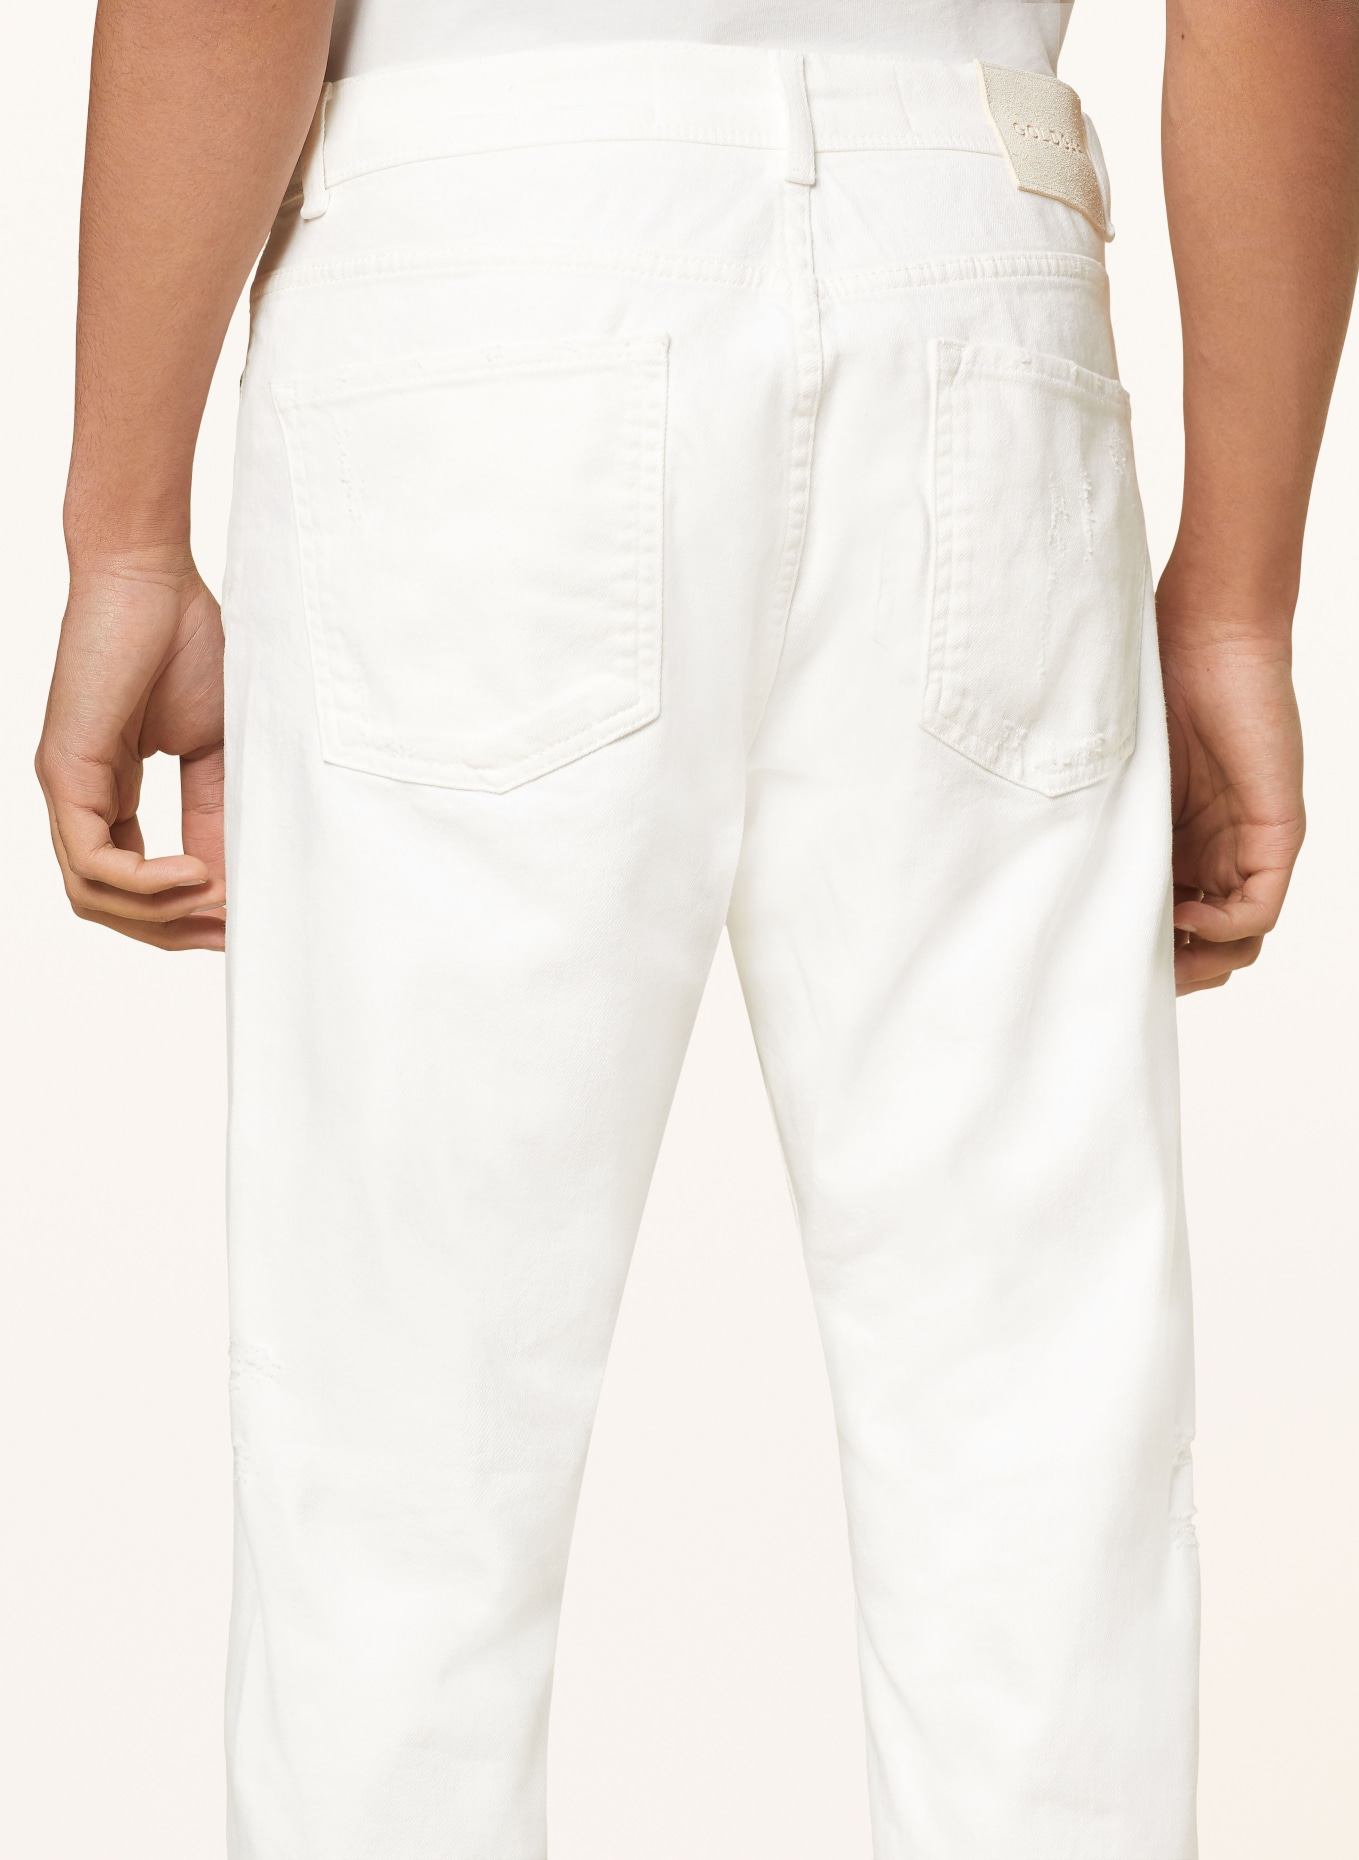 GOLDGARN DENIM Destroyed Jeans RHEINAU Tapered Fit, Farbe: 1000 WHITE (Bild 6)